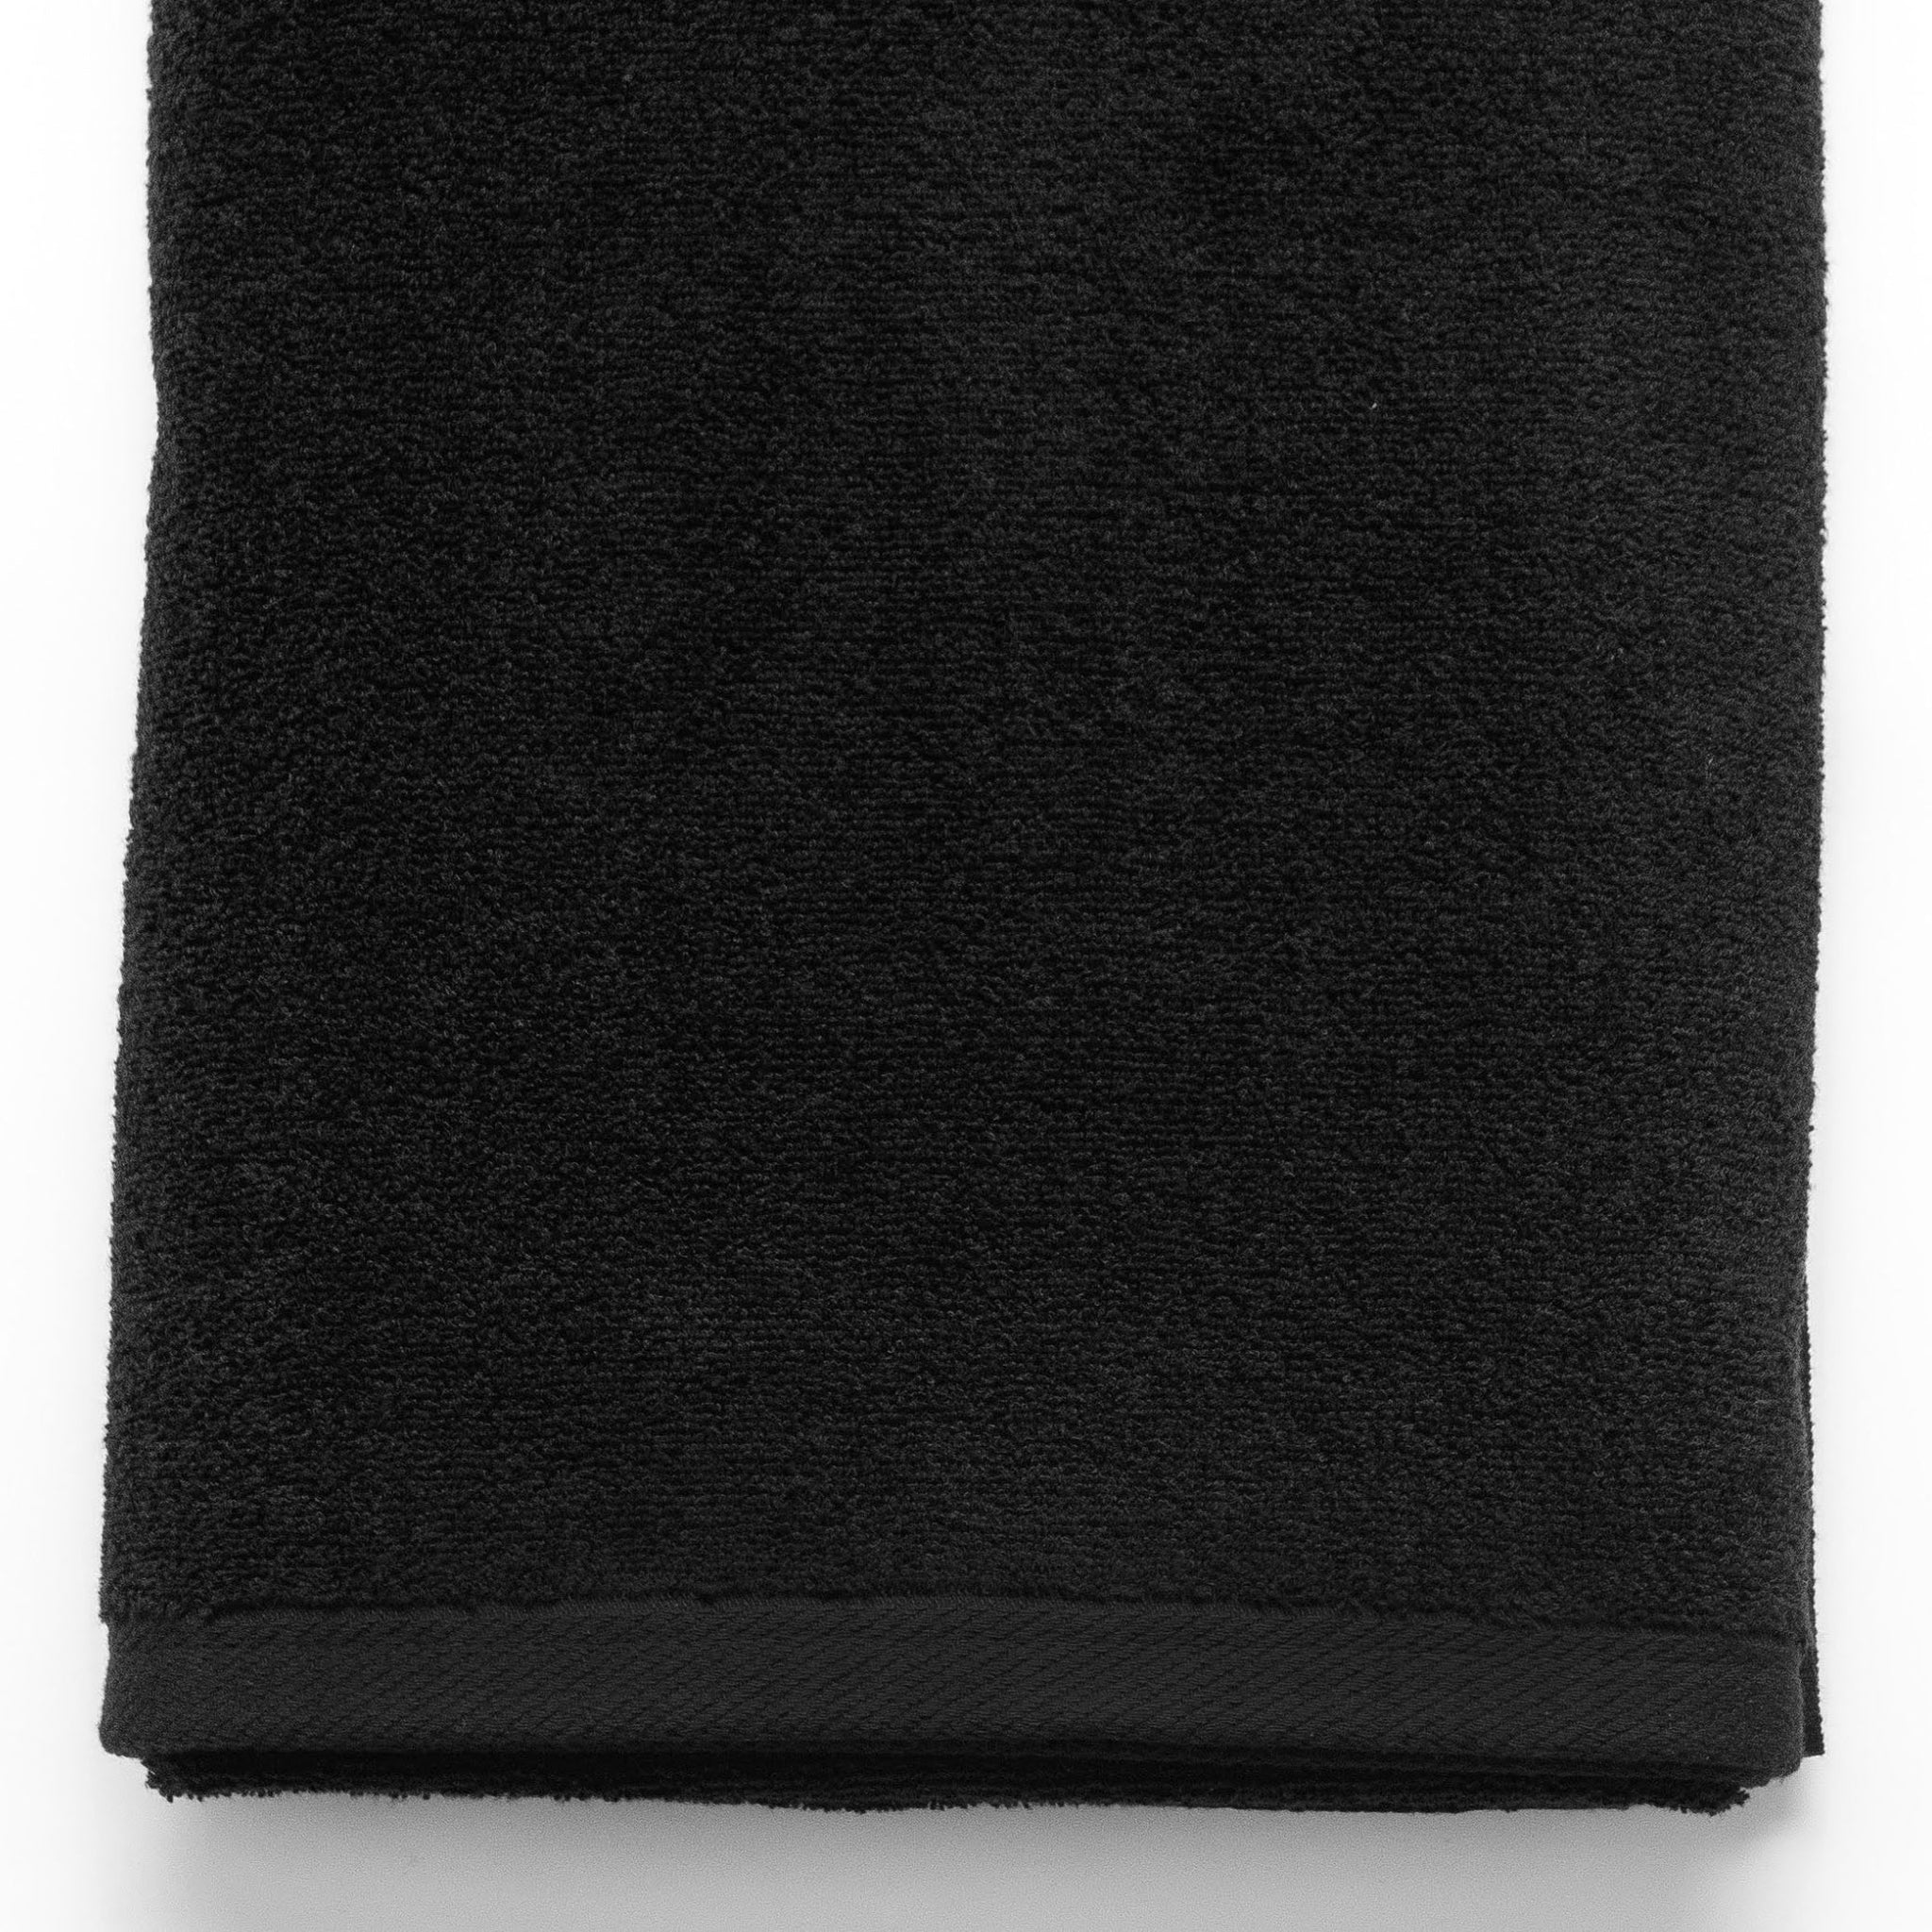 13x13-Black Washcloths -Premium 100% Cotton